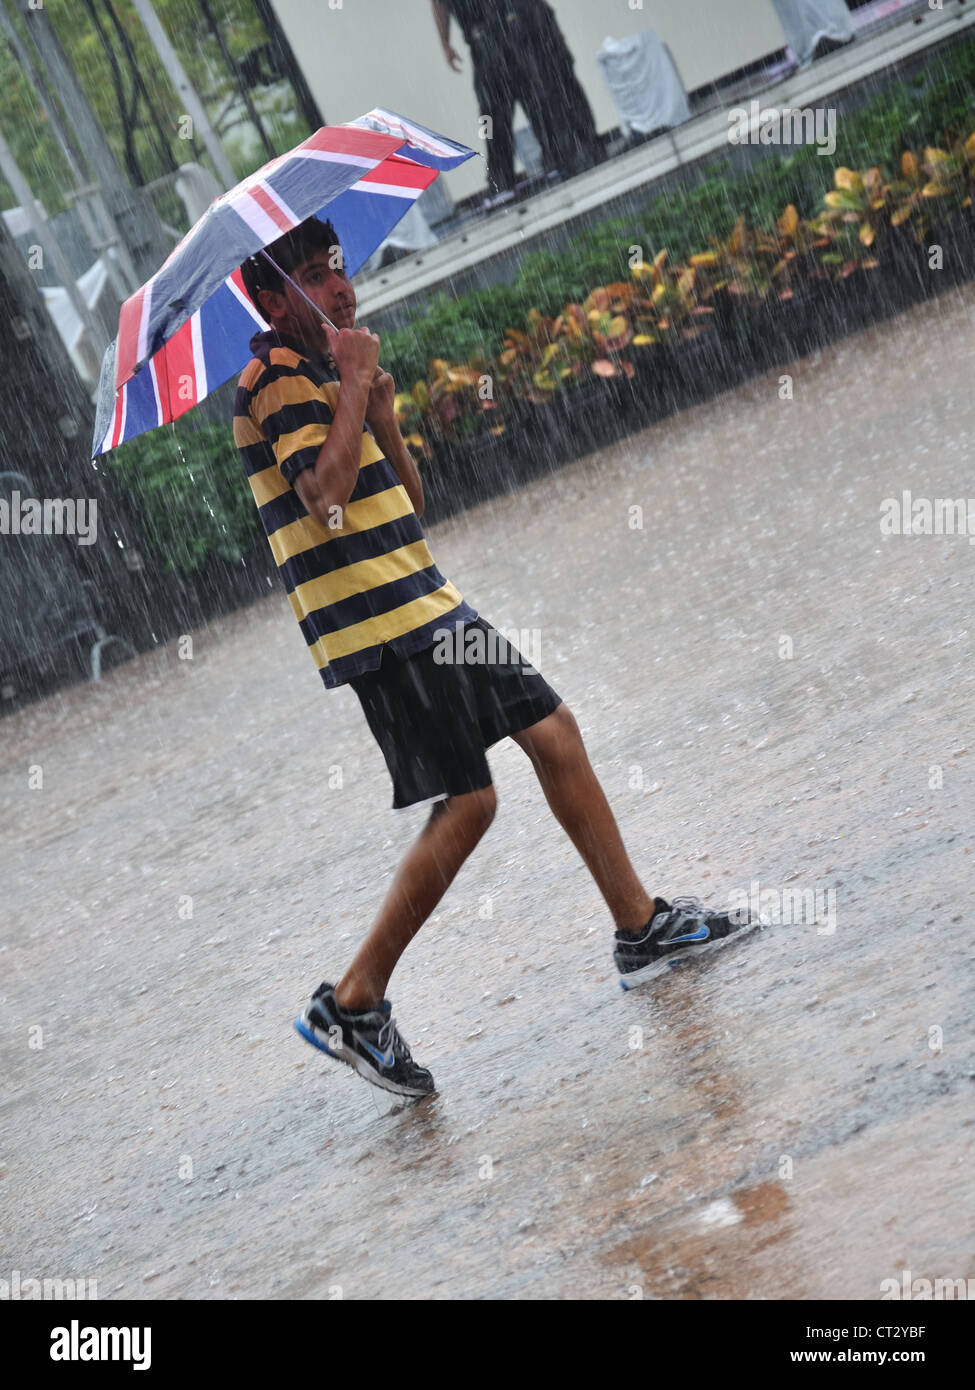 Junge mit britischer Flagge (Union Jack) Regenschirm in strömendem Regen bei einem Gewitter erwischt. Stockfoto